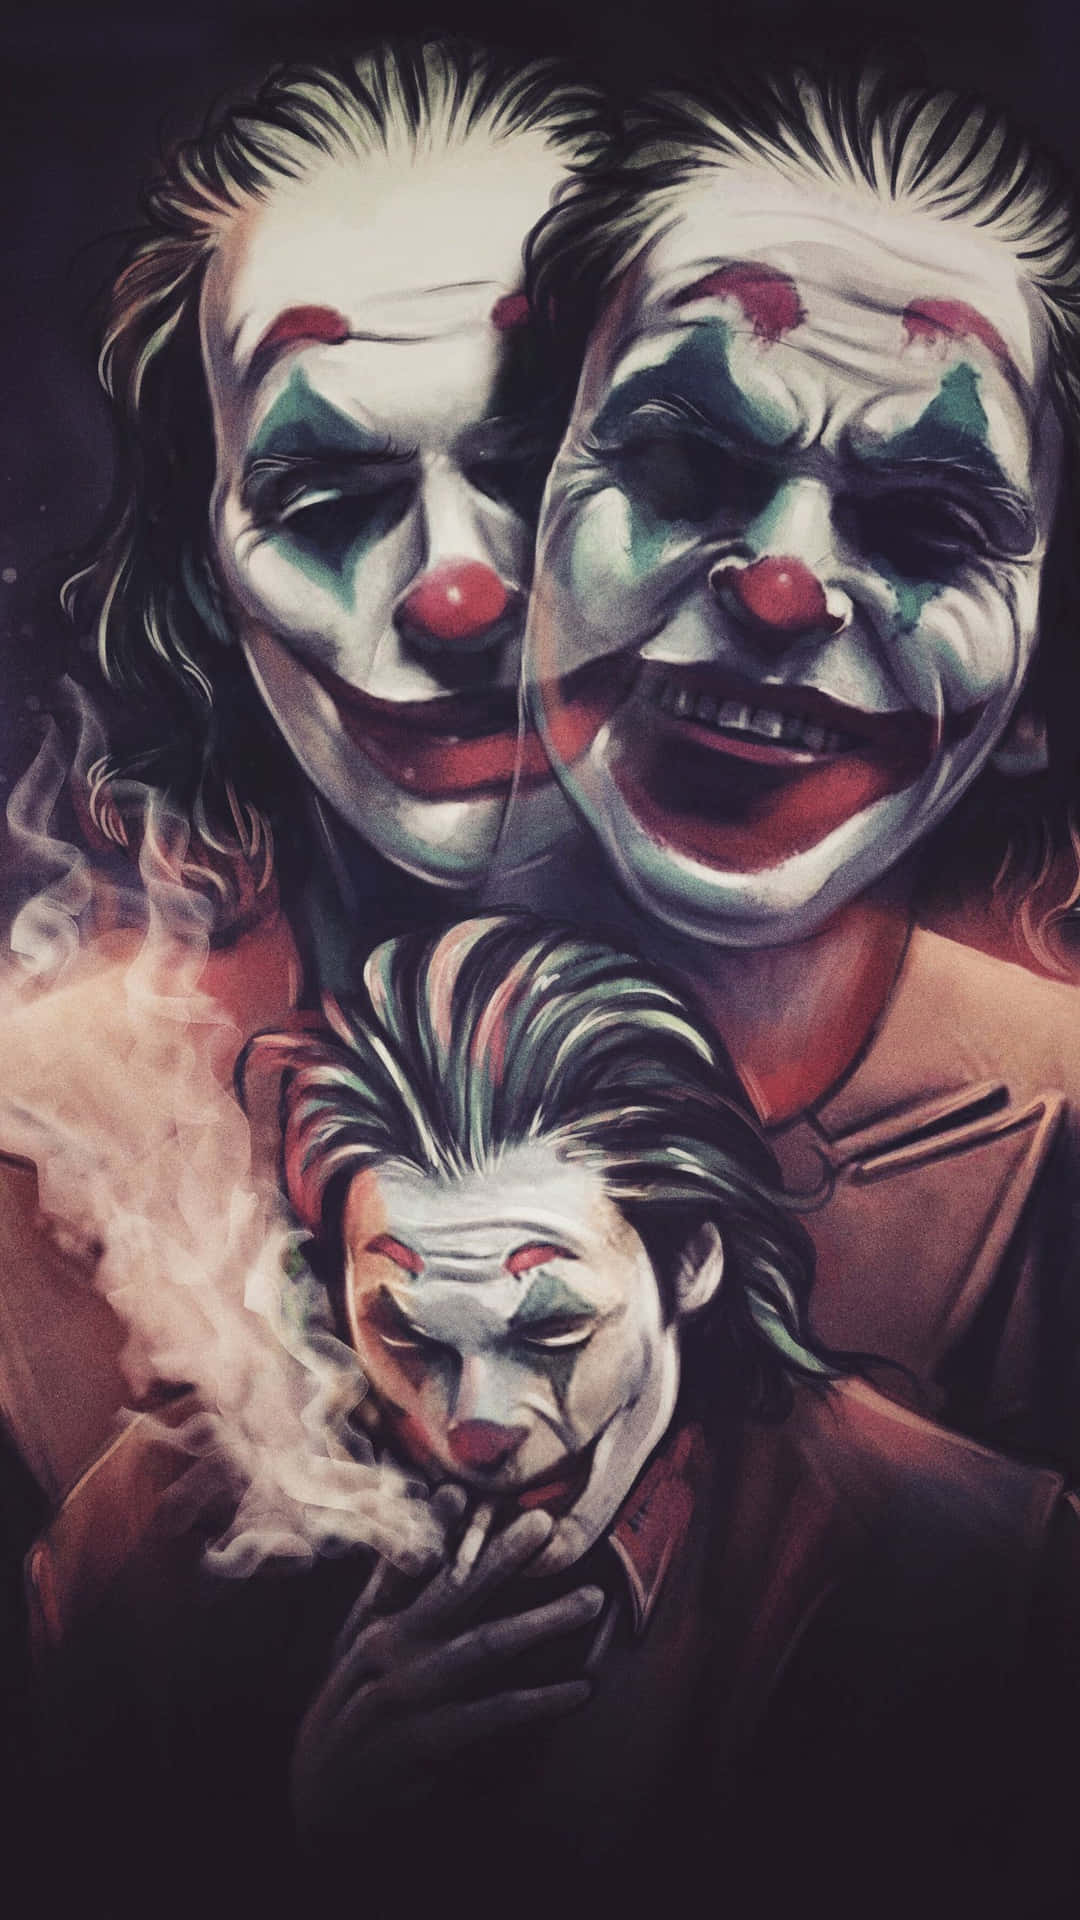 "Wear a smile, wear a Joker mask!"